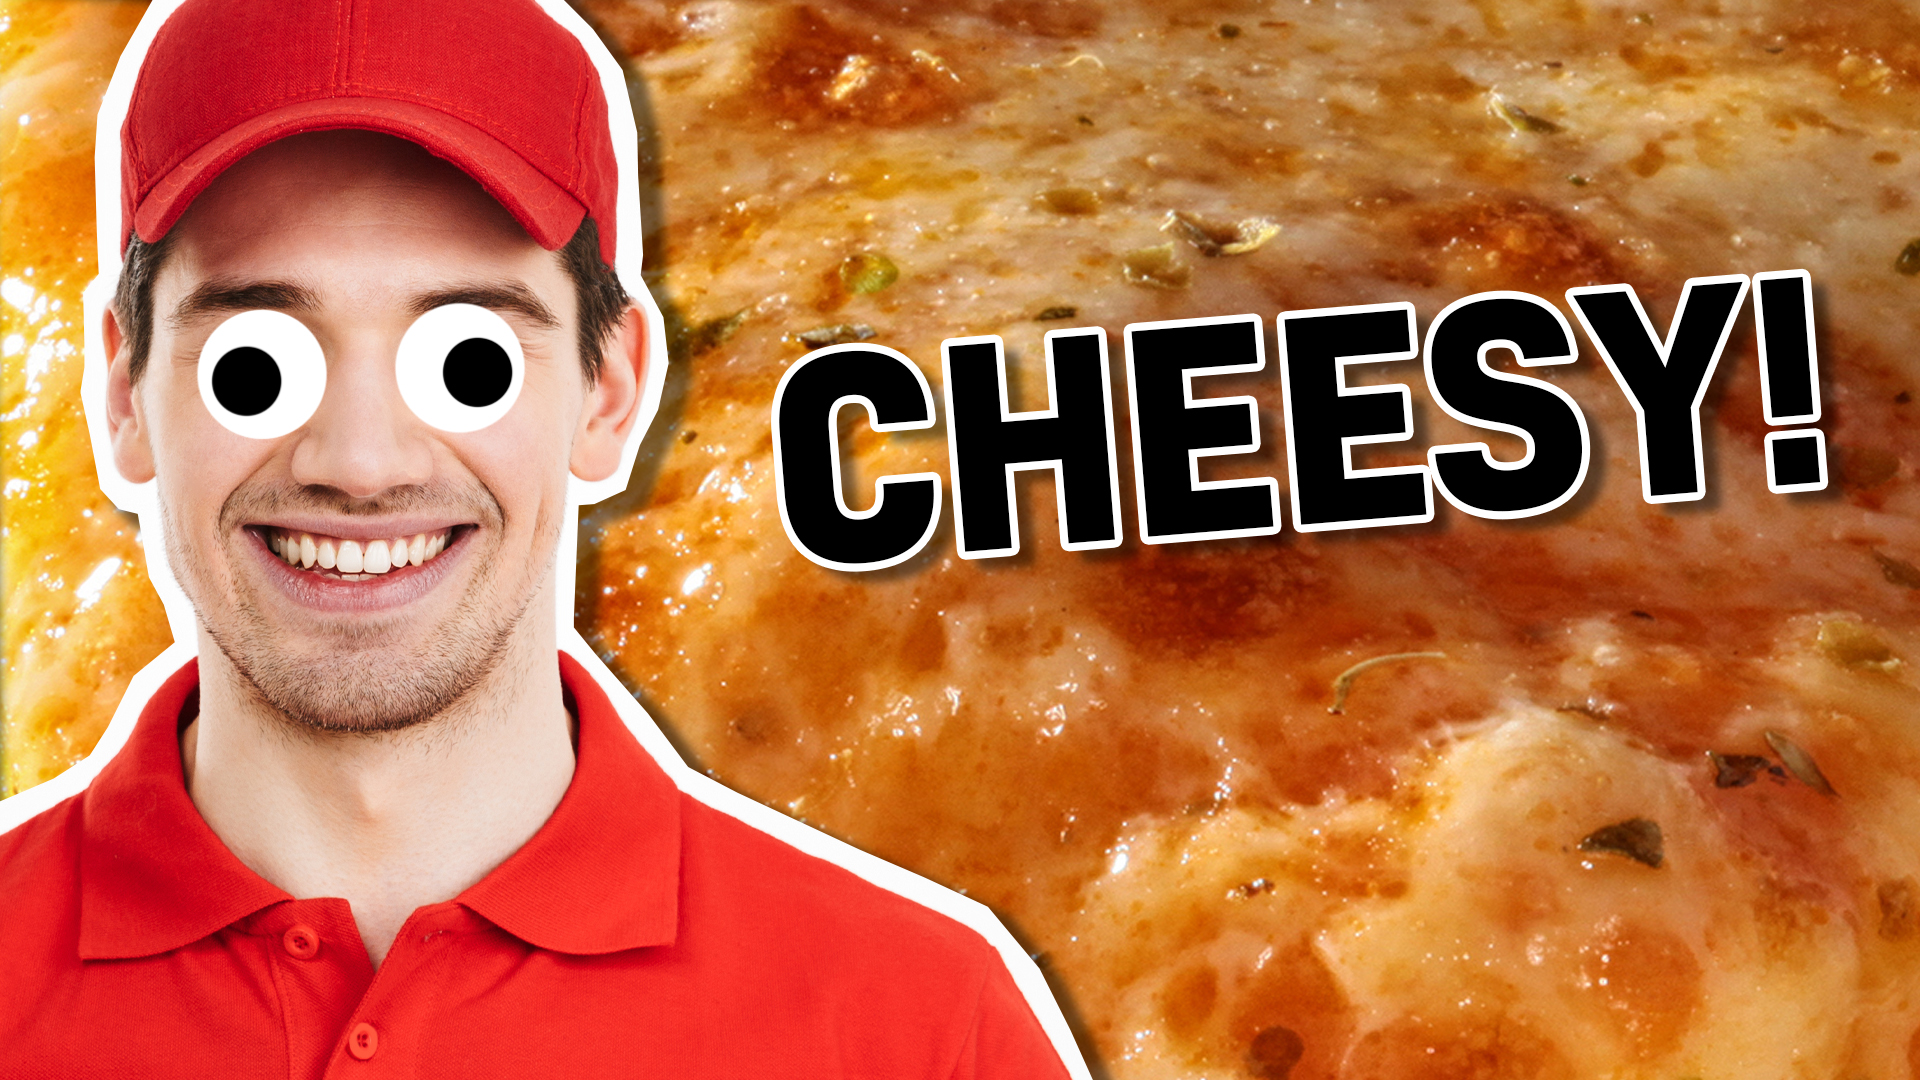 Cheesy pizza